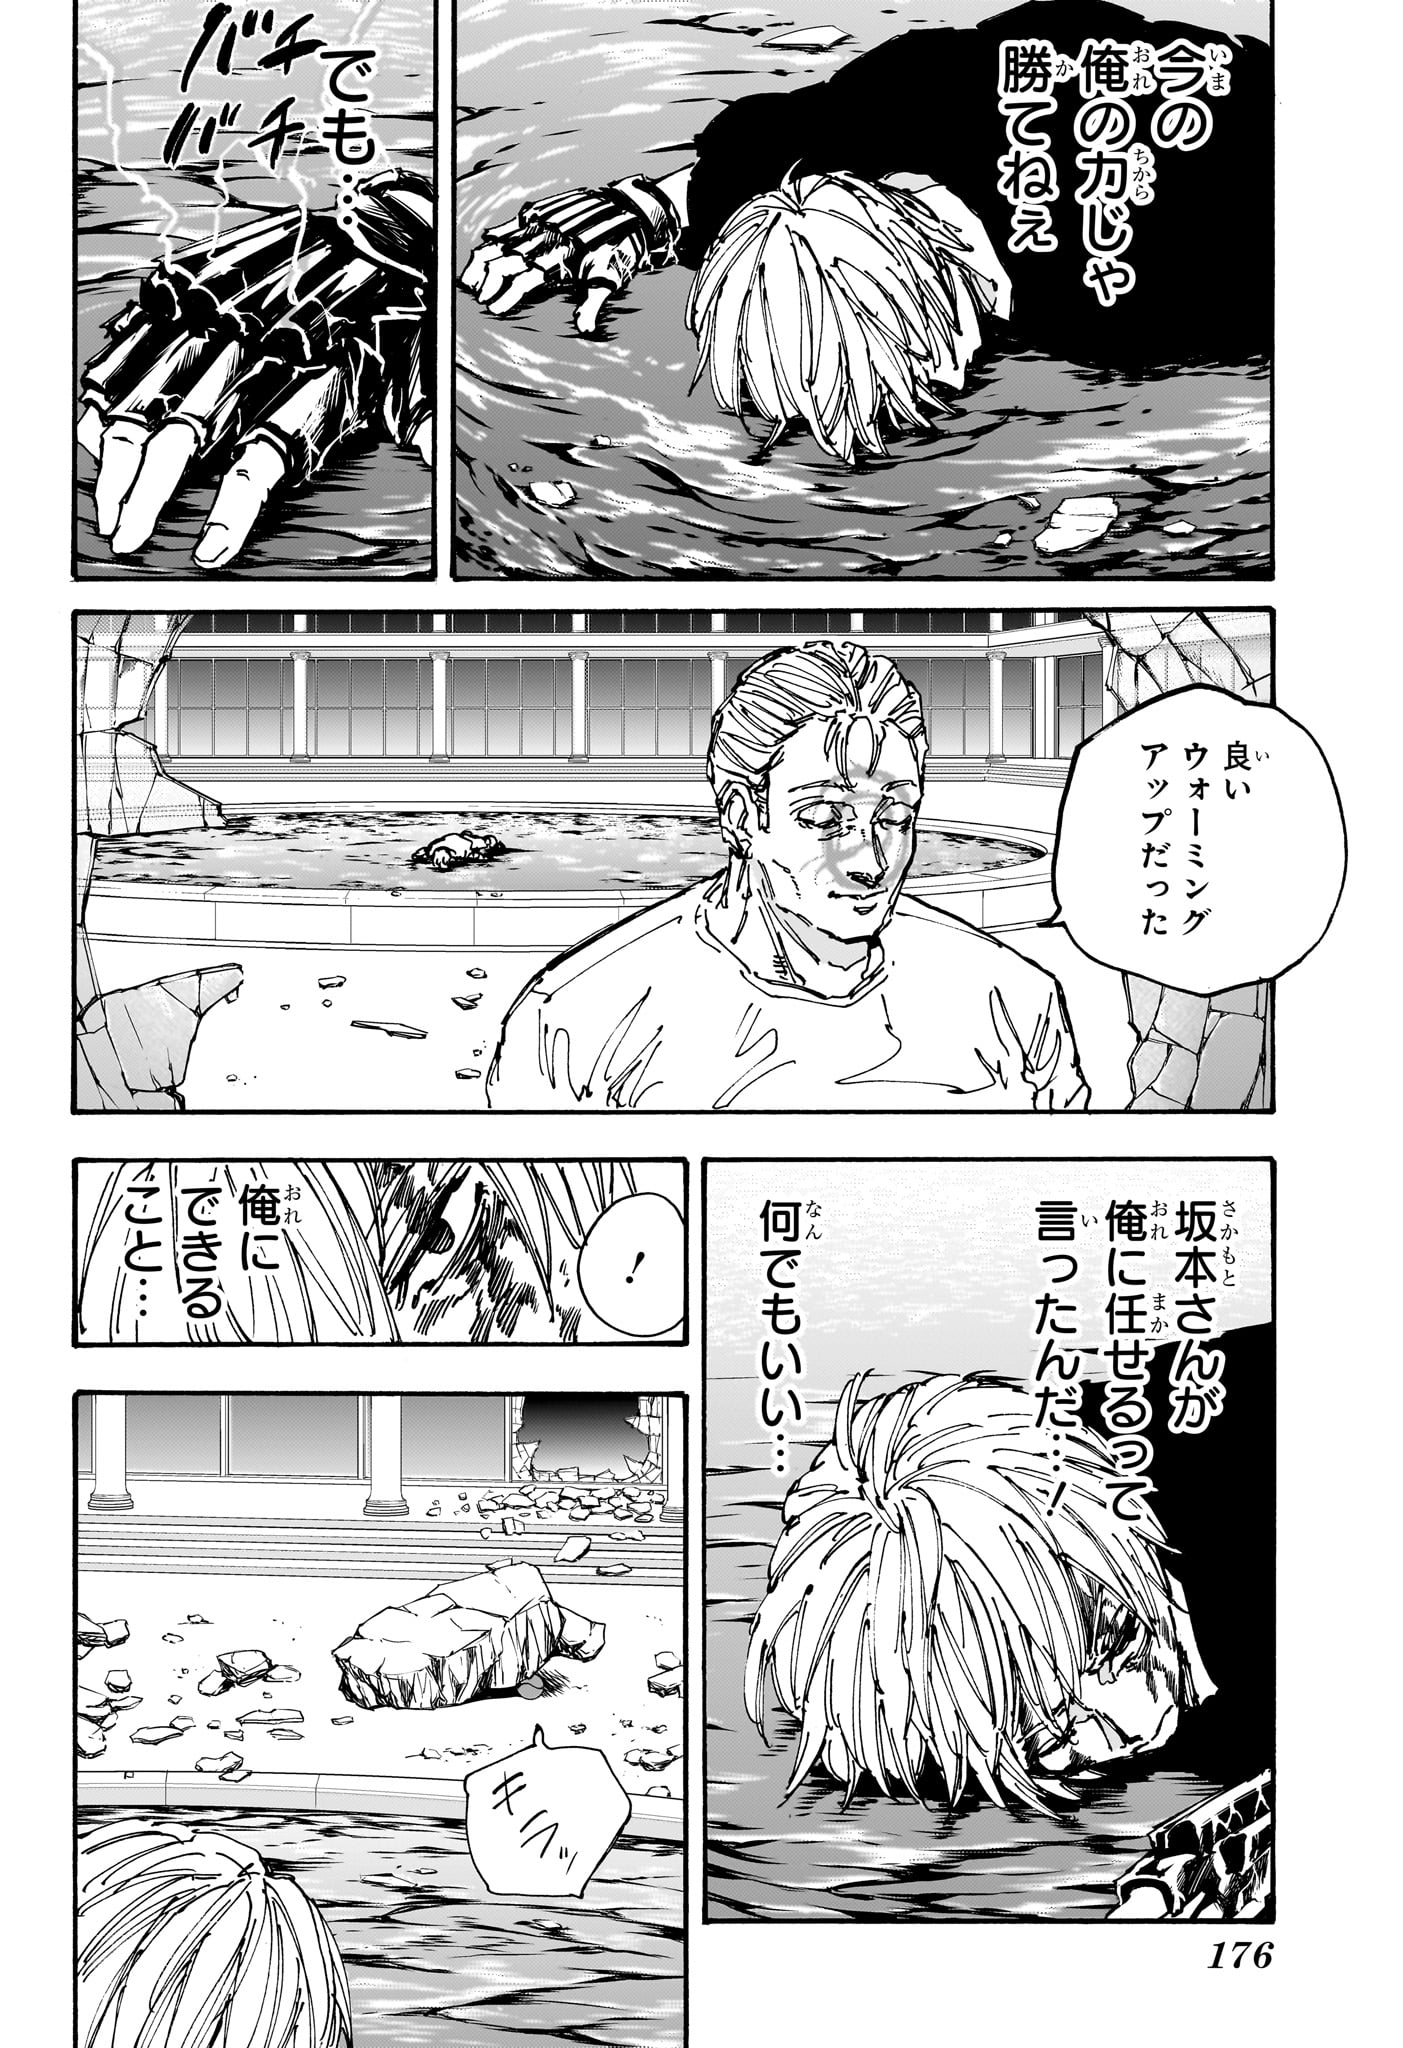 Sakamoto Days - Chapter 157 - Page 12